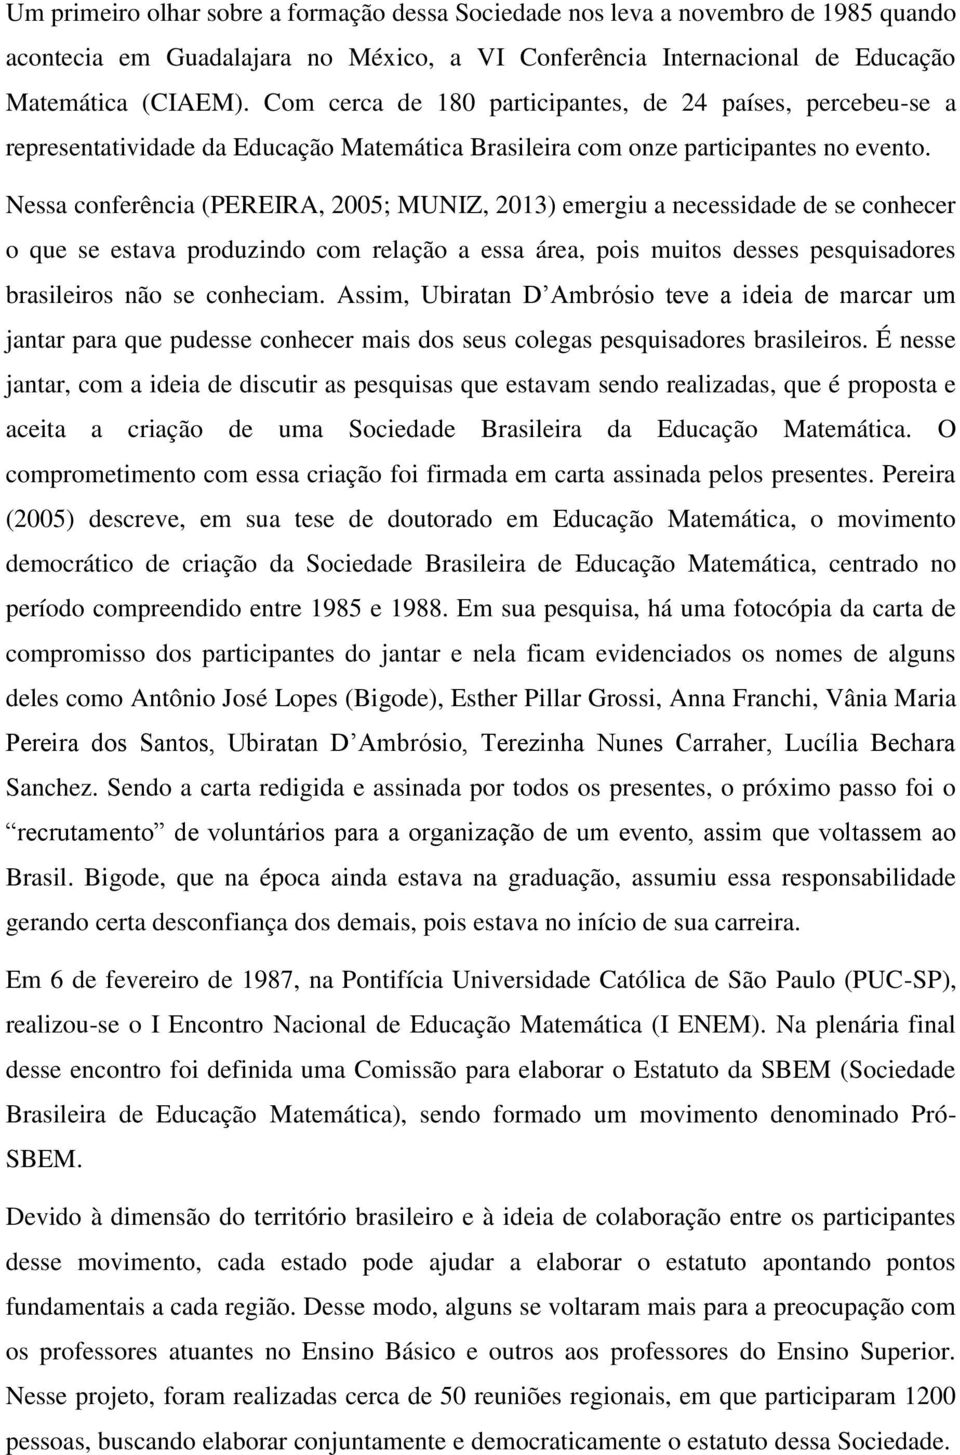 Nessa conferência (PEREIRA, 2005; MUNIZ, 2013) emergiu a necessidade de se conhecer o que se estava produzindo com relação a essa área, pois muitos desses pesquisadores brasileiros não se conheciam.